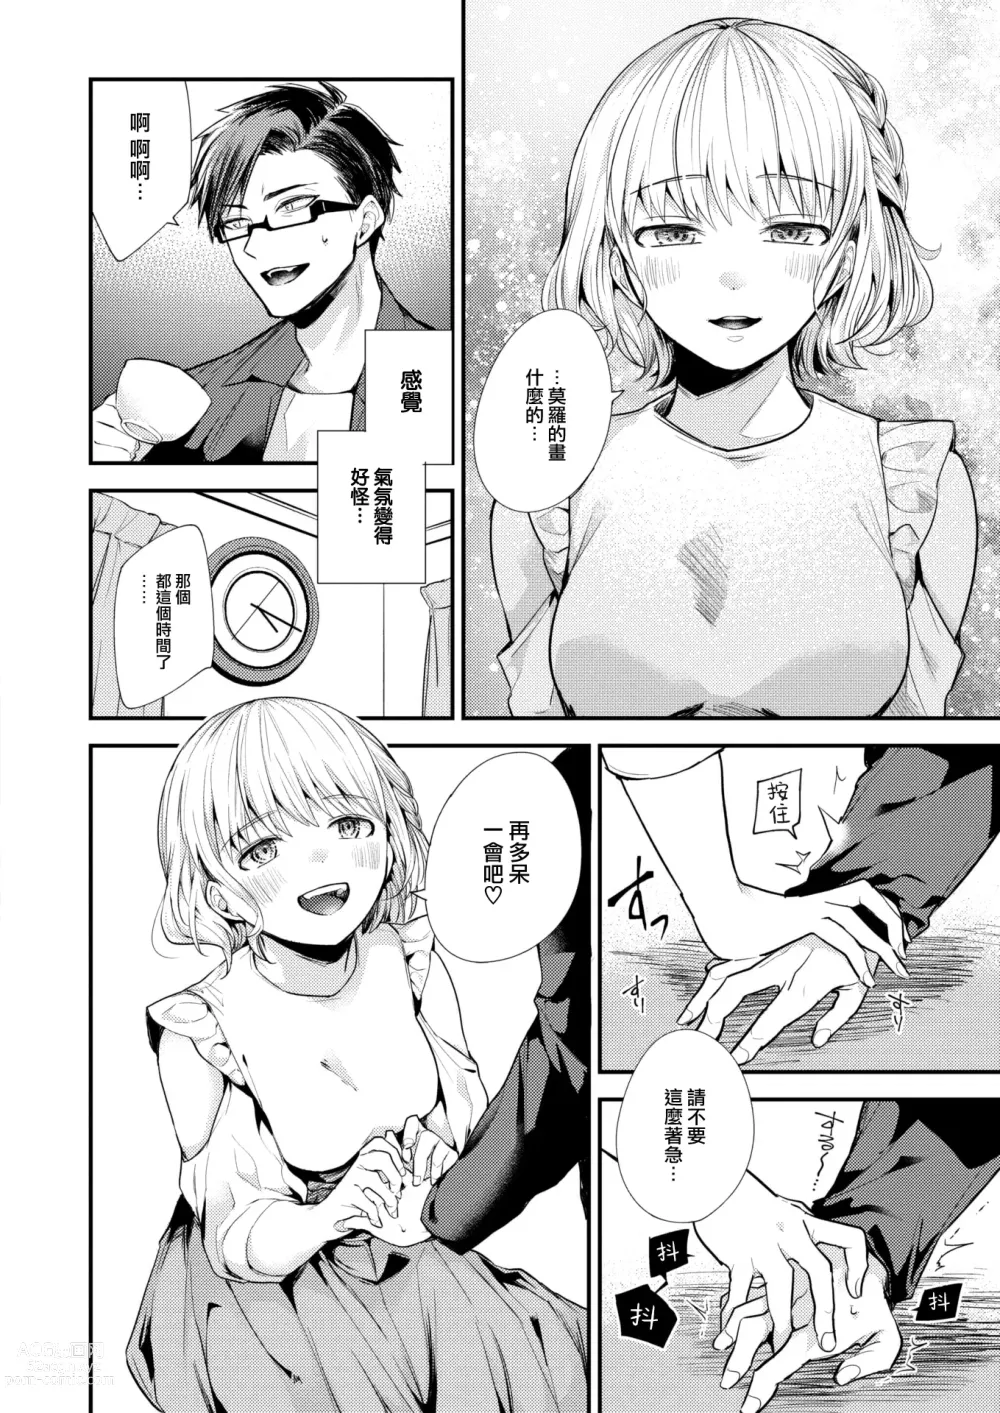 Page 9 of manga Sekishun no Jou